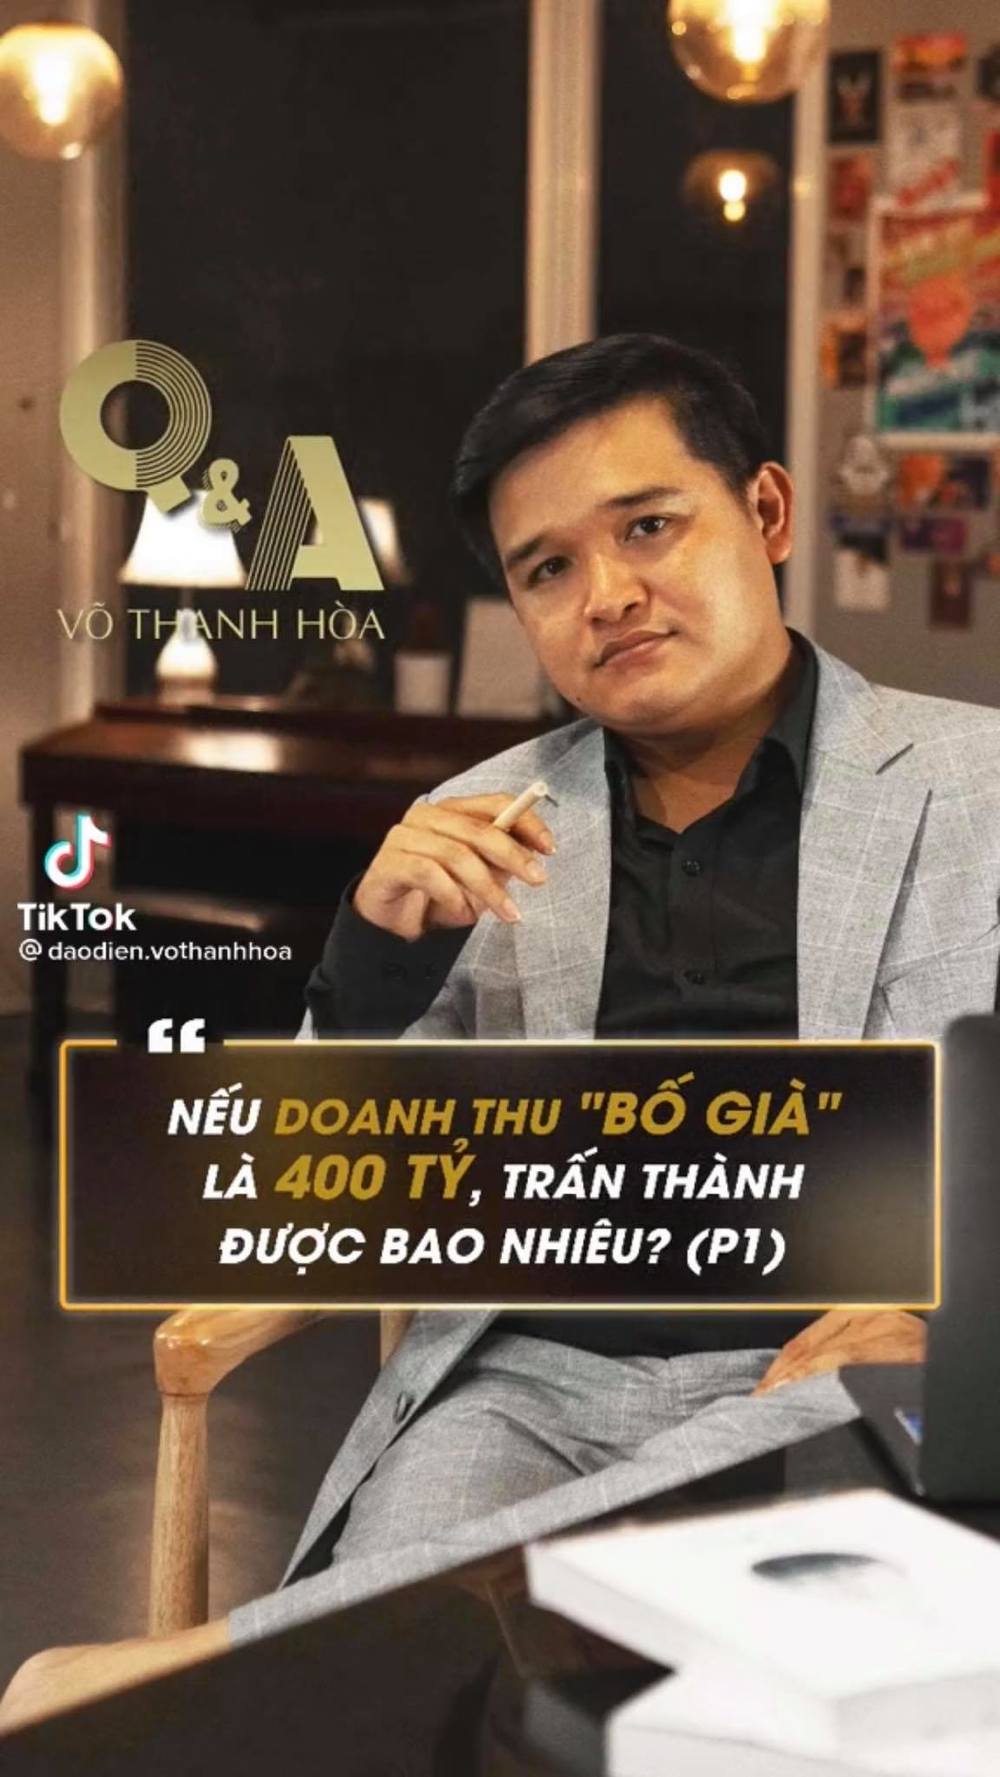  
Đạo diễn Võ Thanh Hòa chia sẻ về việc Trấn Thành được bao nhiêu trong 400 tỷ đó. (Ảnh: Chụp màn hình)